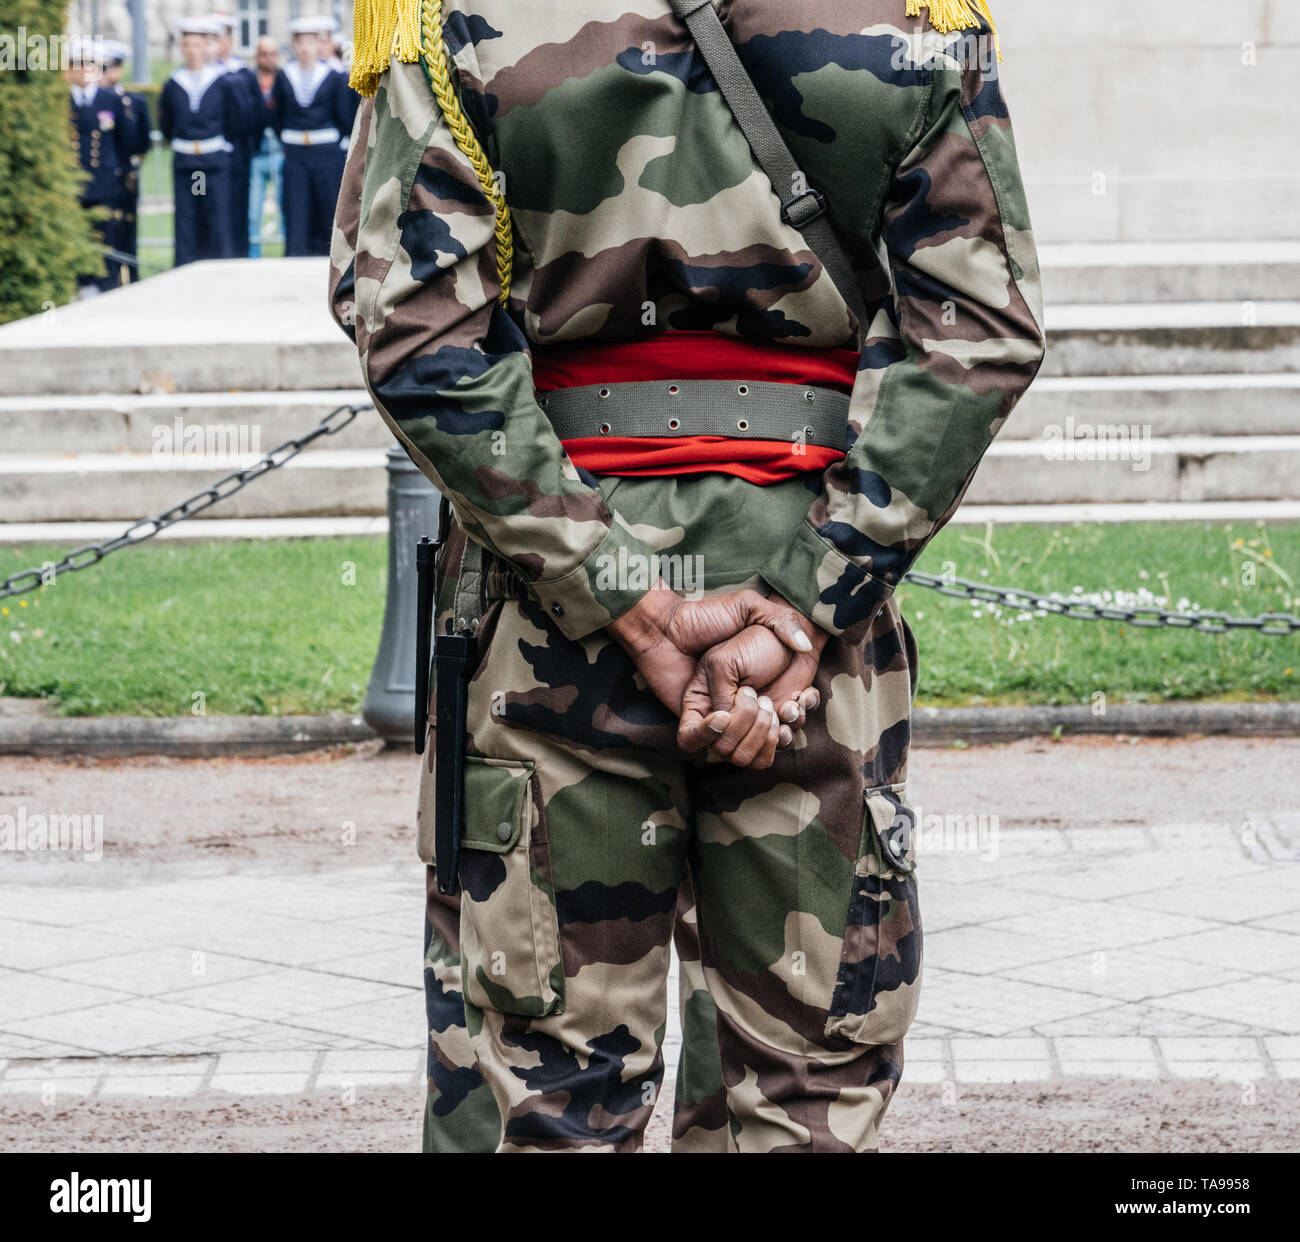 Vue arrière du soldat noir origine méconnaissable rendant hommage à la cérémonie pour marquer des alliés de l'Ouest Deux victoire la 72e anniversaire de la victoire sur l'Allemagne nazie en 1945 Banque D'Images